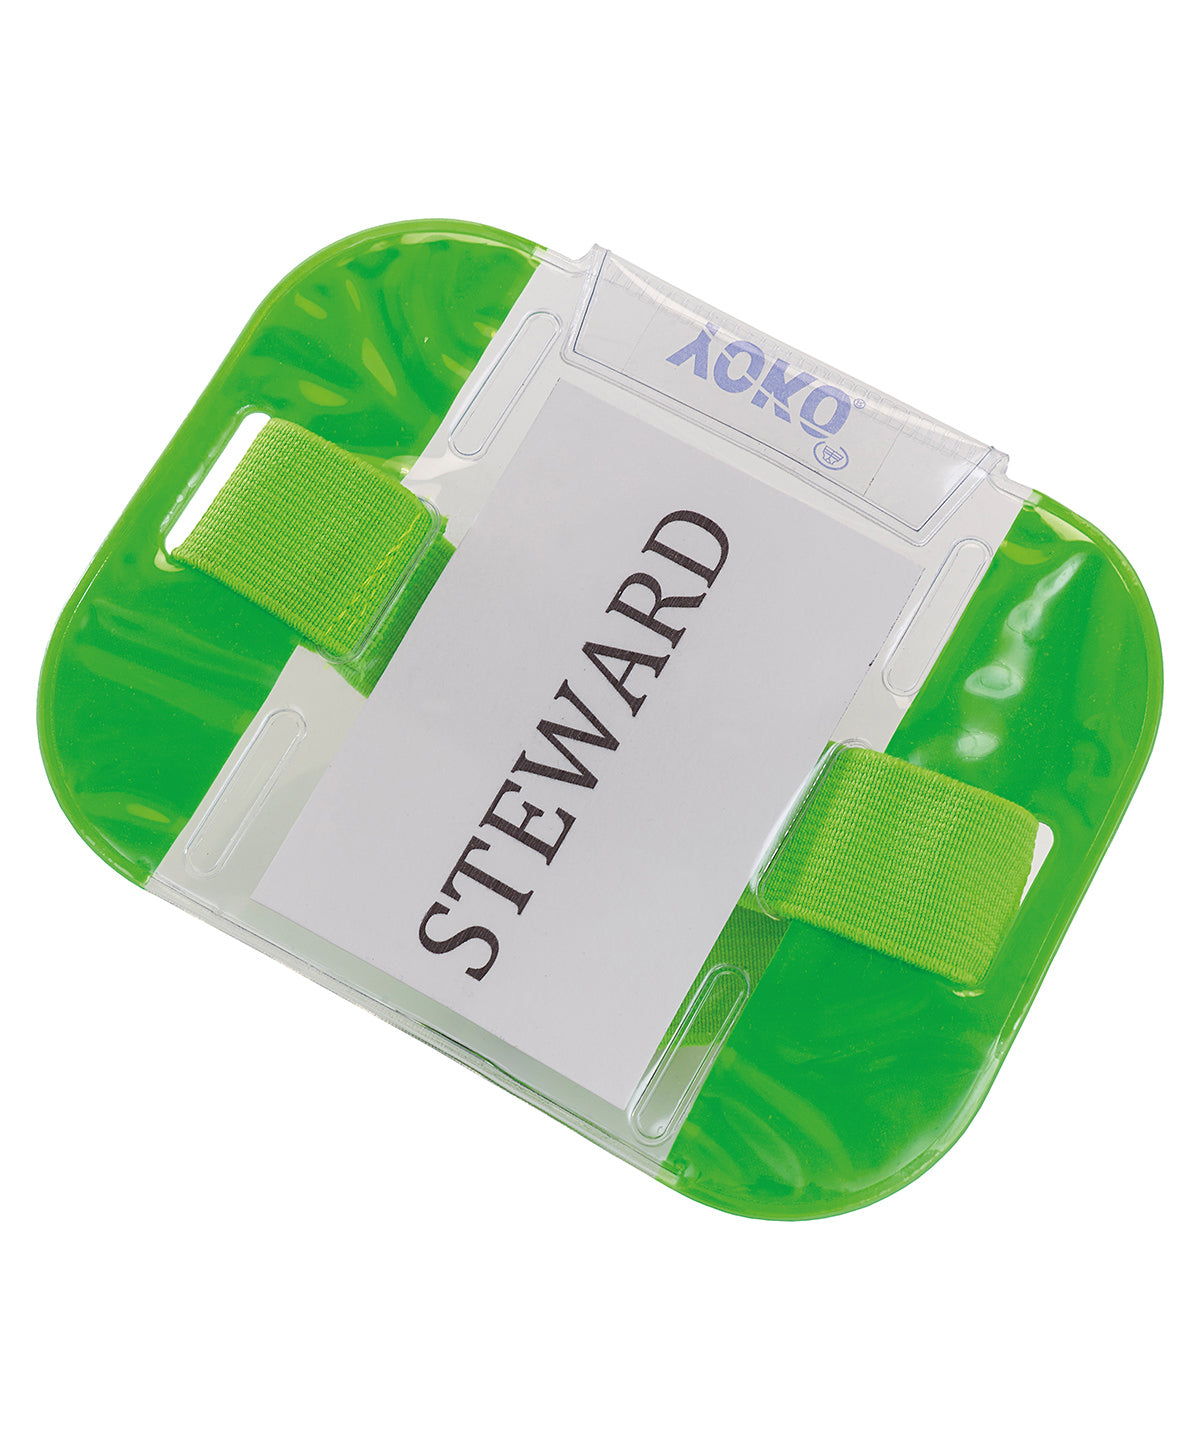 Armbönd - ID Armbands (ID03)